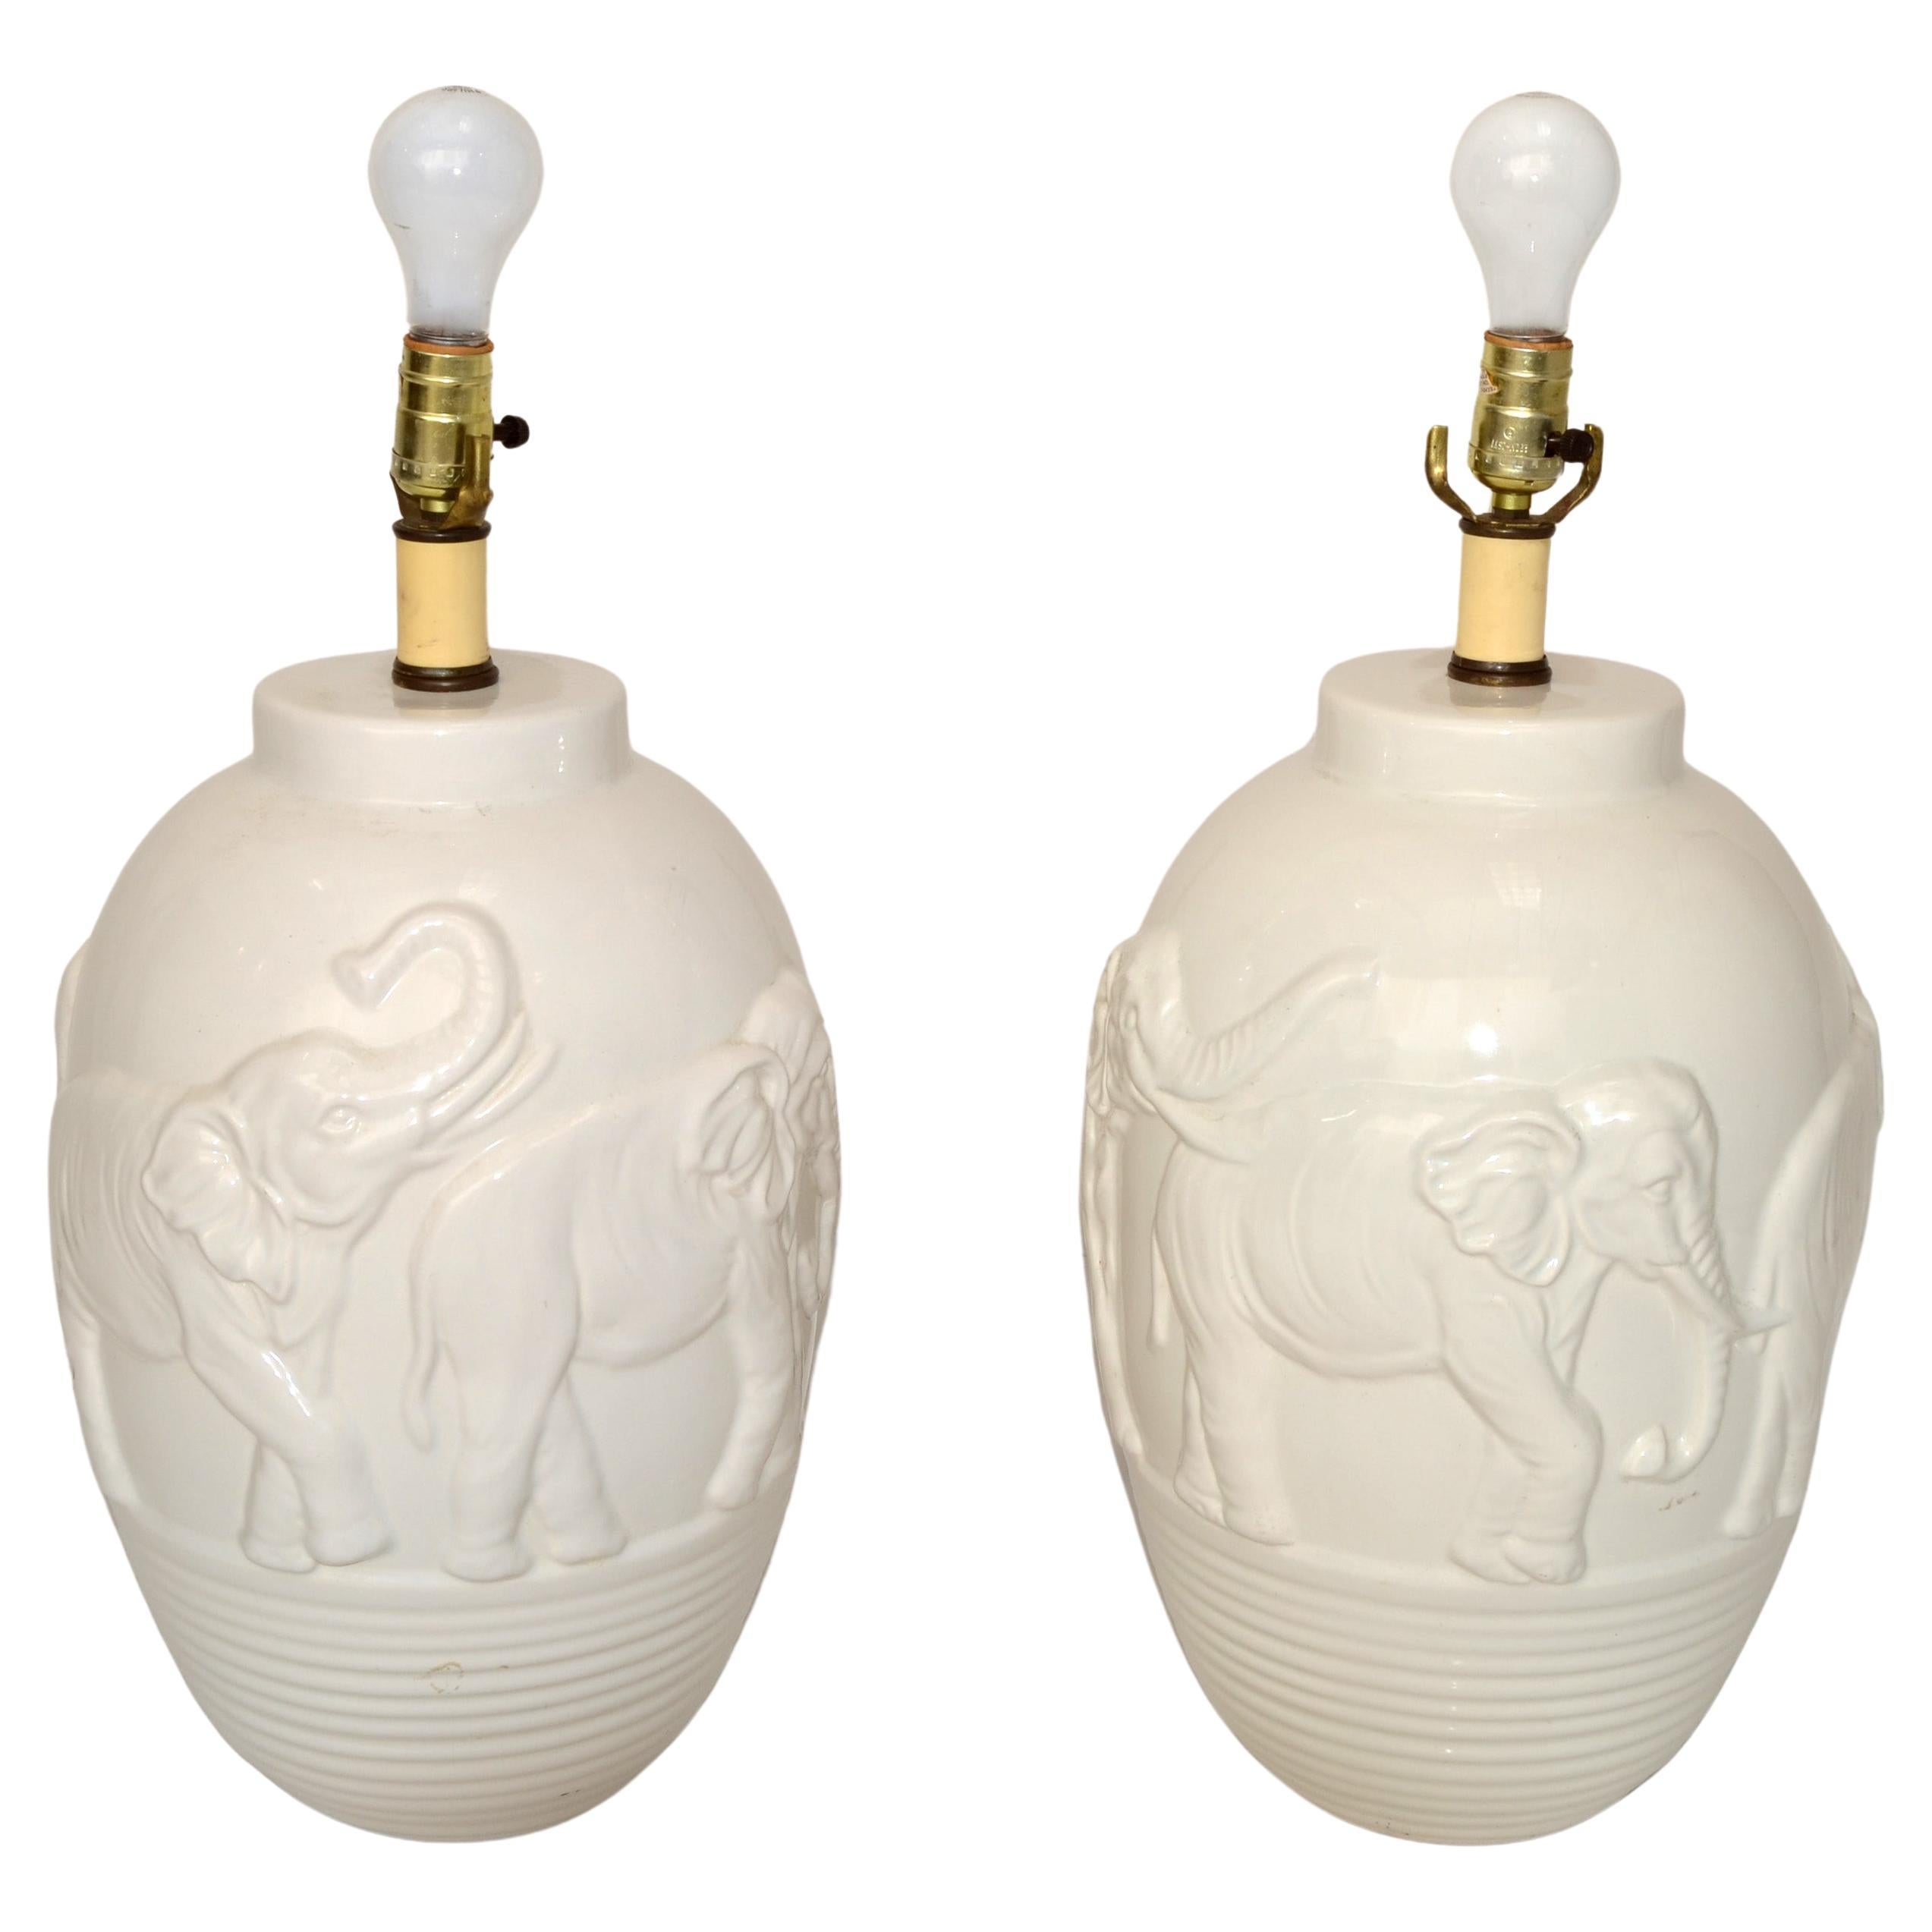 Paire de lampes de bureau éléphants en céramique émaillée blanche de style chinoiseries, motifs d'animaux asiatiques